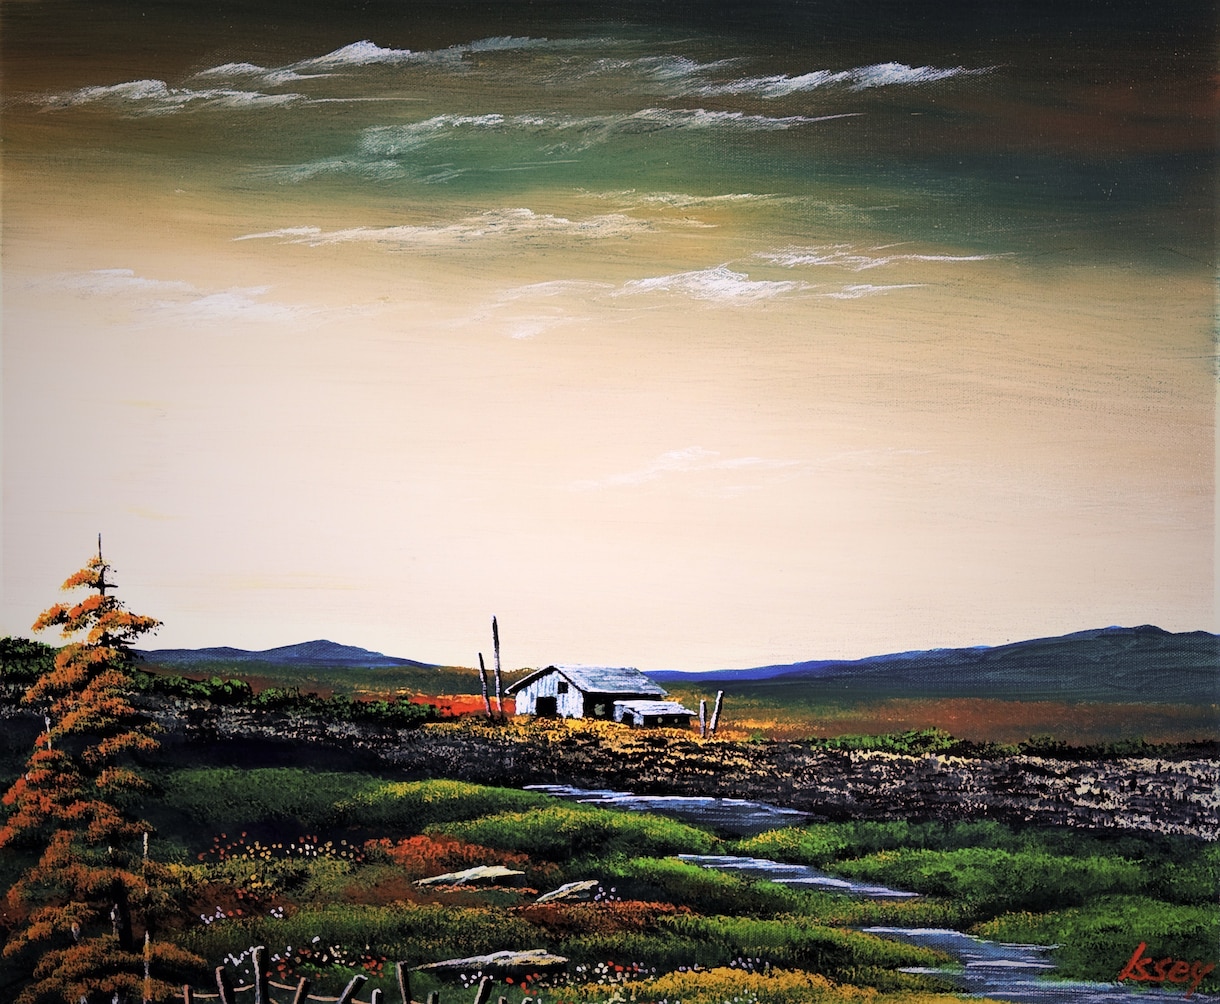 のんびりしたアイルランドの地が楽しめます 昔の田舎の風が吹く・・・郷愁のアイルランド湿地帯。 イメージ1